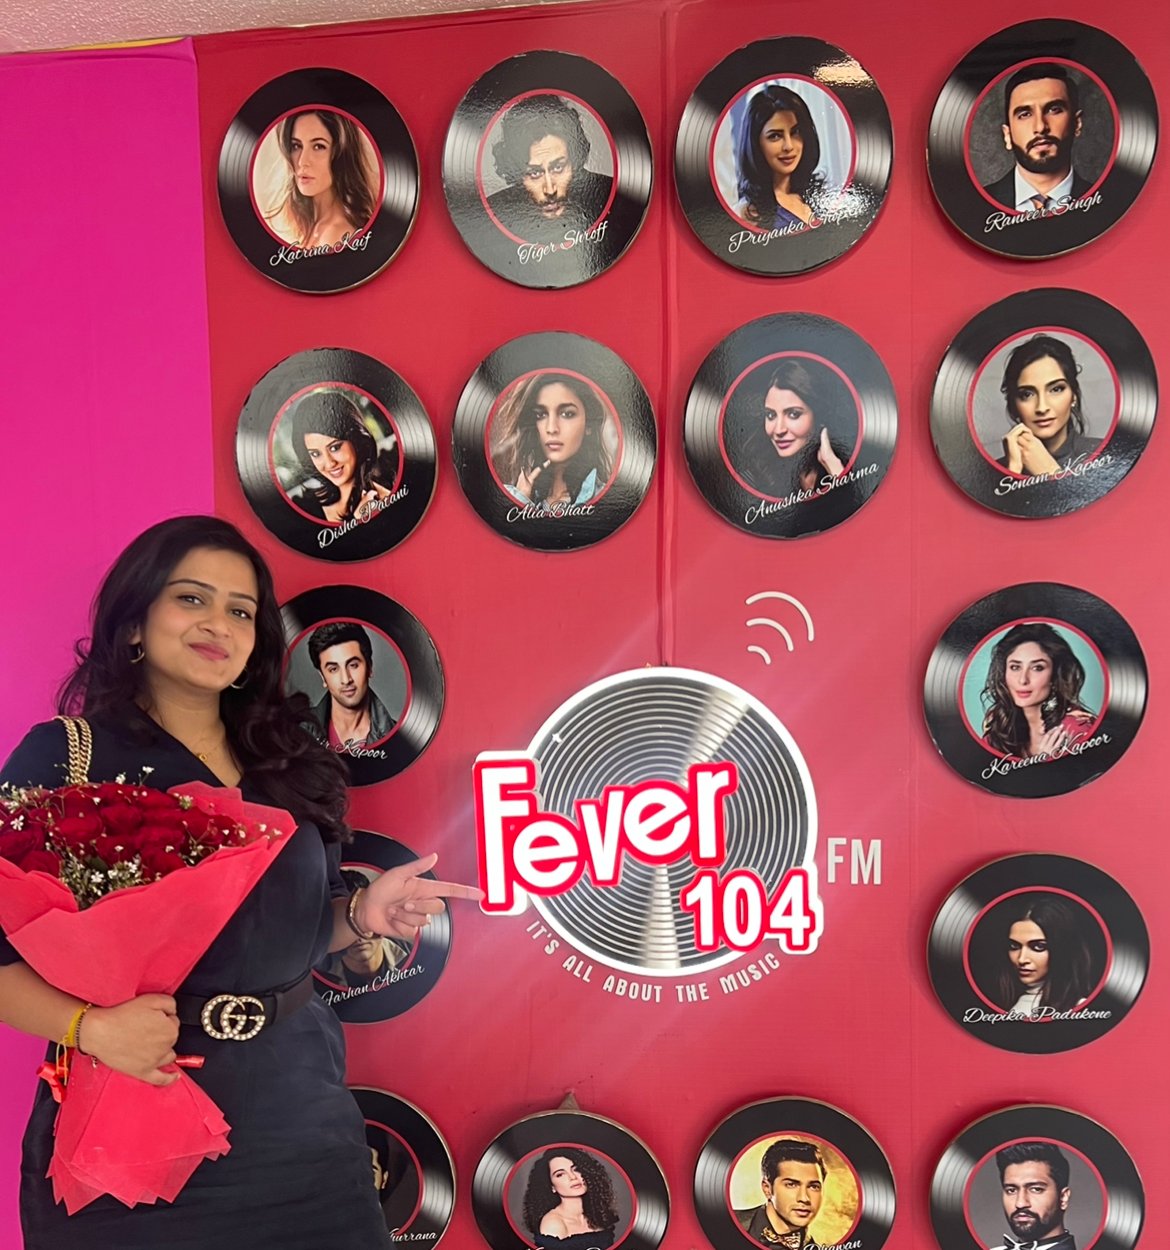 Fever FM radio